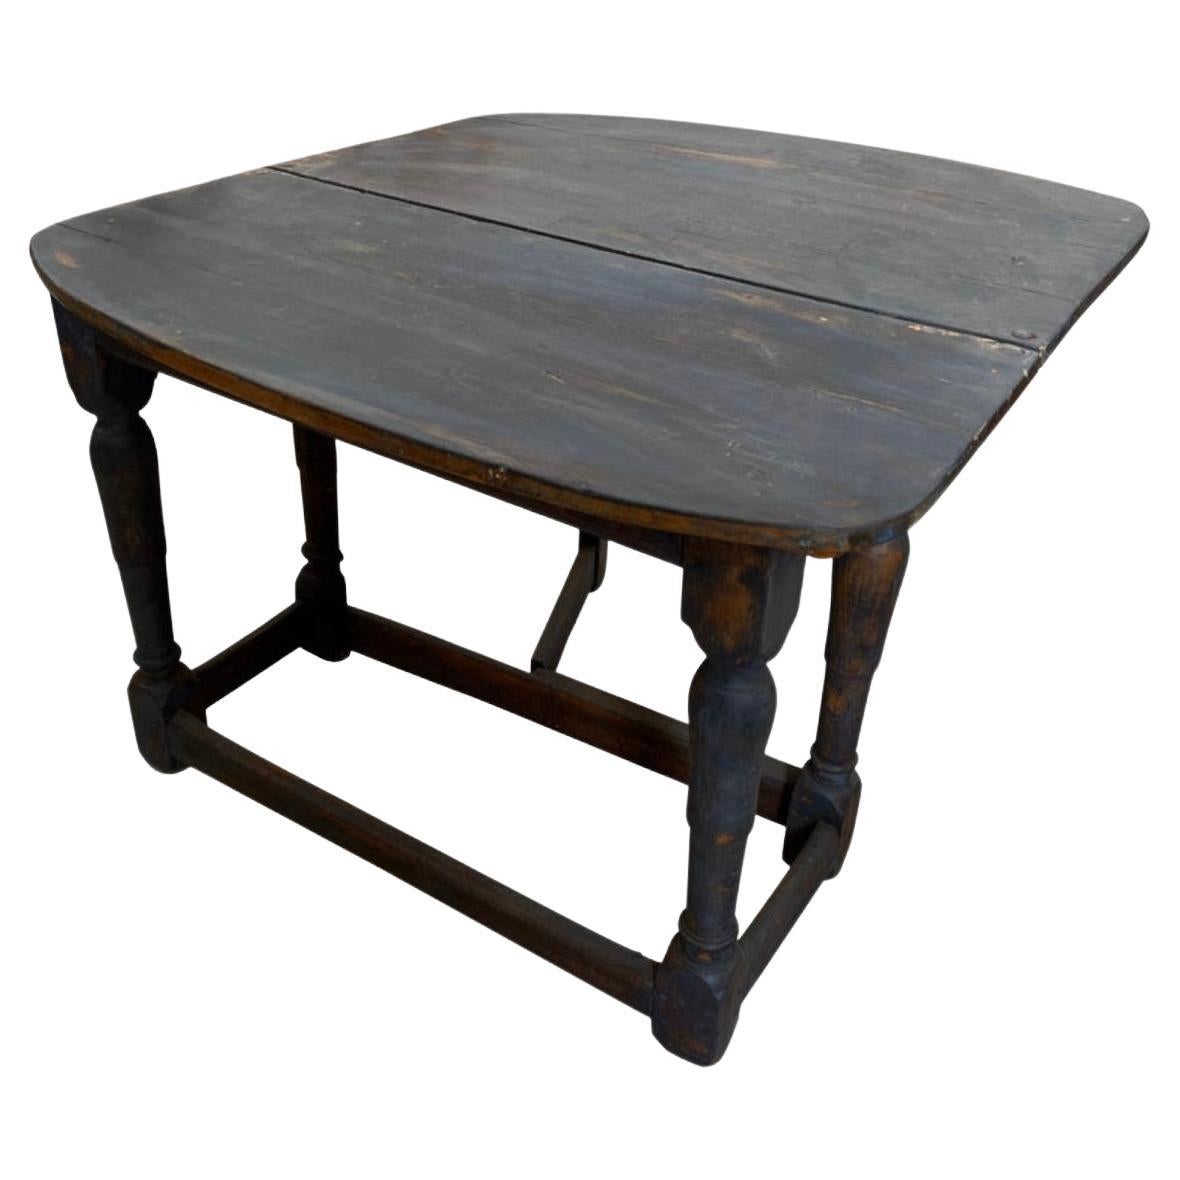 Schwedischer Gustavianischer klappbarer Tisch Wabi Sabi aus dem 19. Jahrhundert